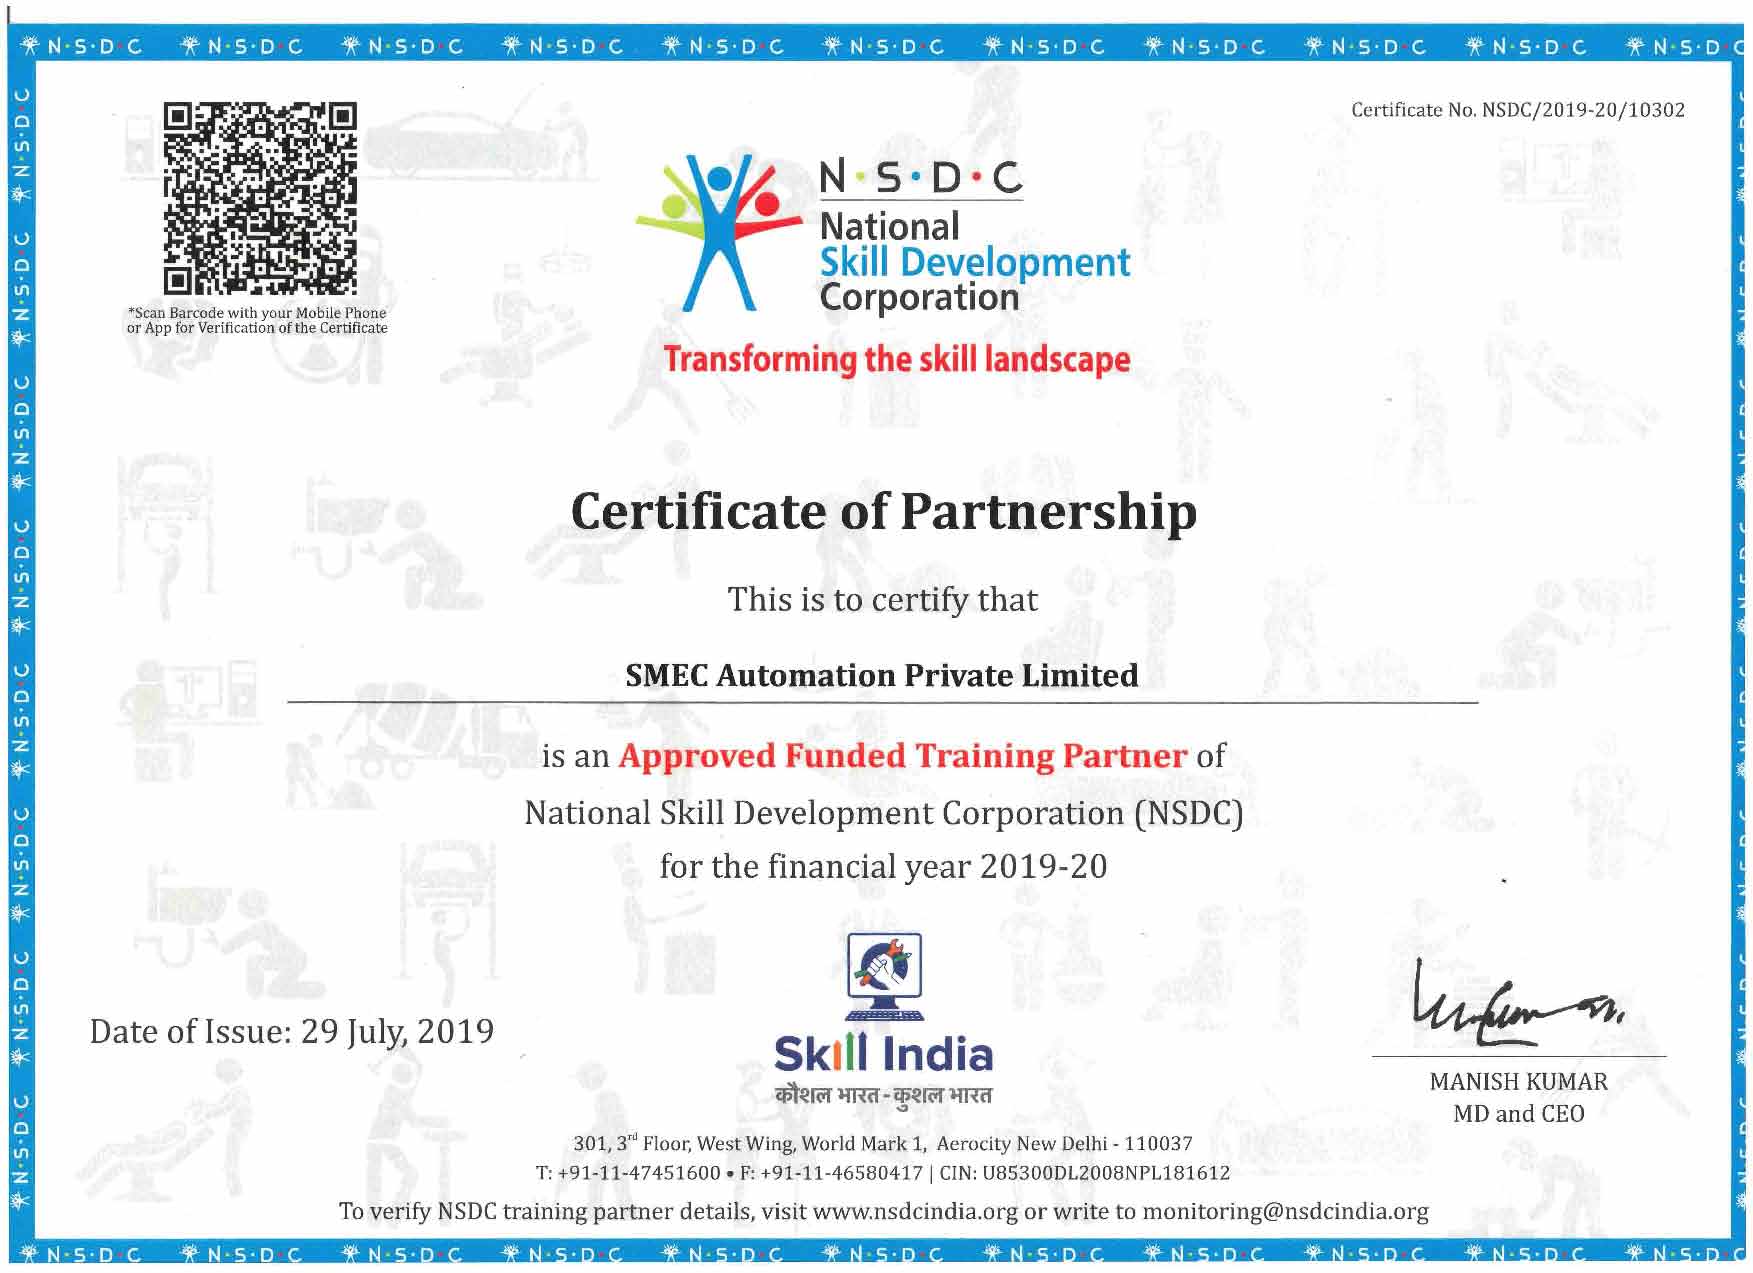 nsdc approved training partner-bms training Ernakulam